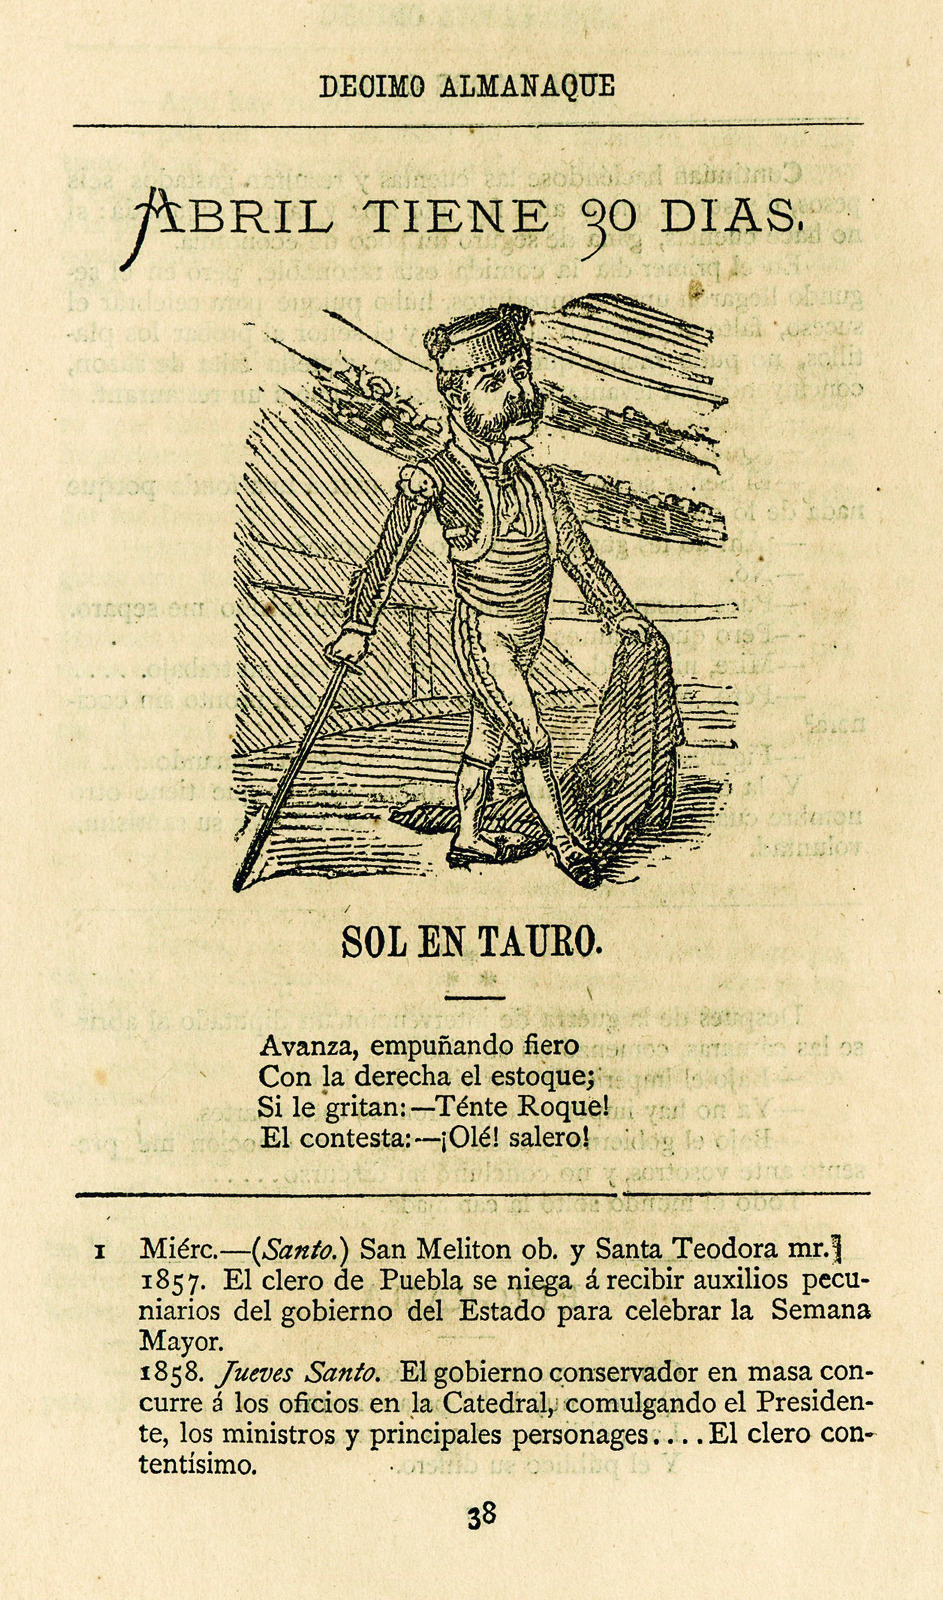 10º Almanaque del Padre Cobos para 1885.